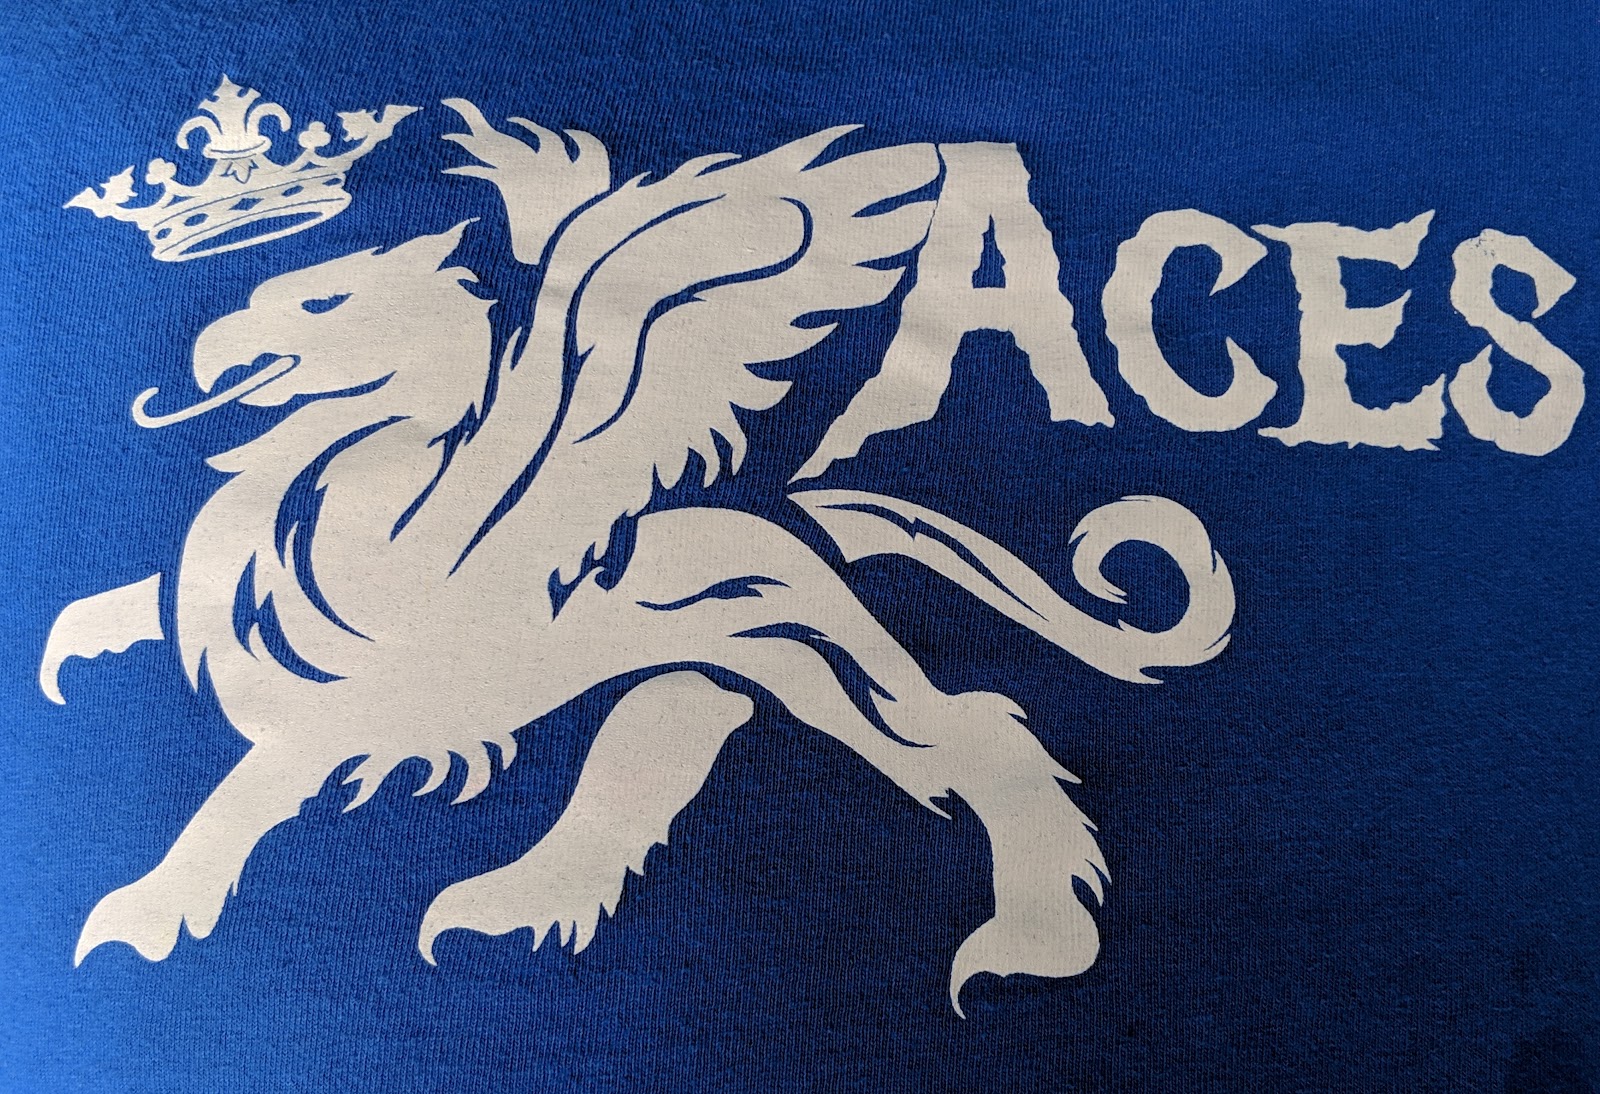 ACES emblem